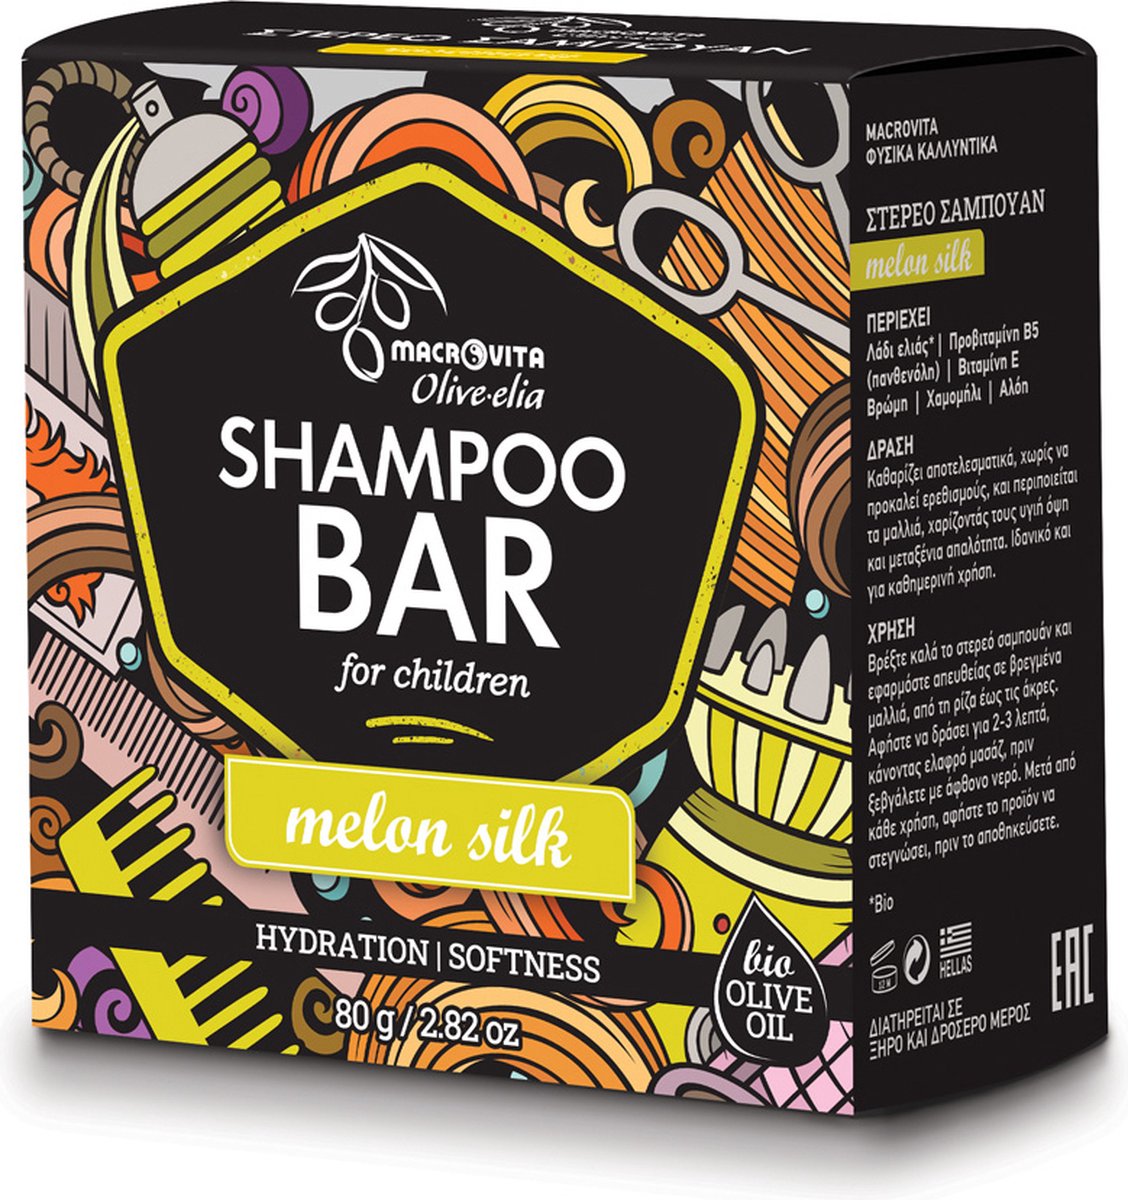 Olive-elia Shampoo Bar voor Kinderen (Meloen) - 80 gram